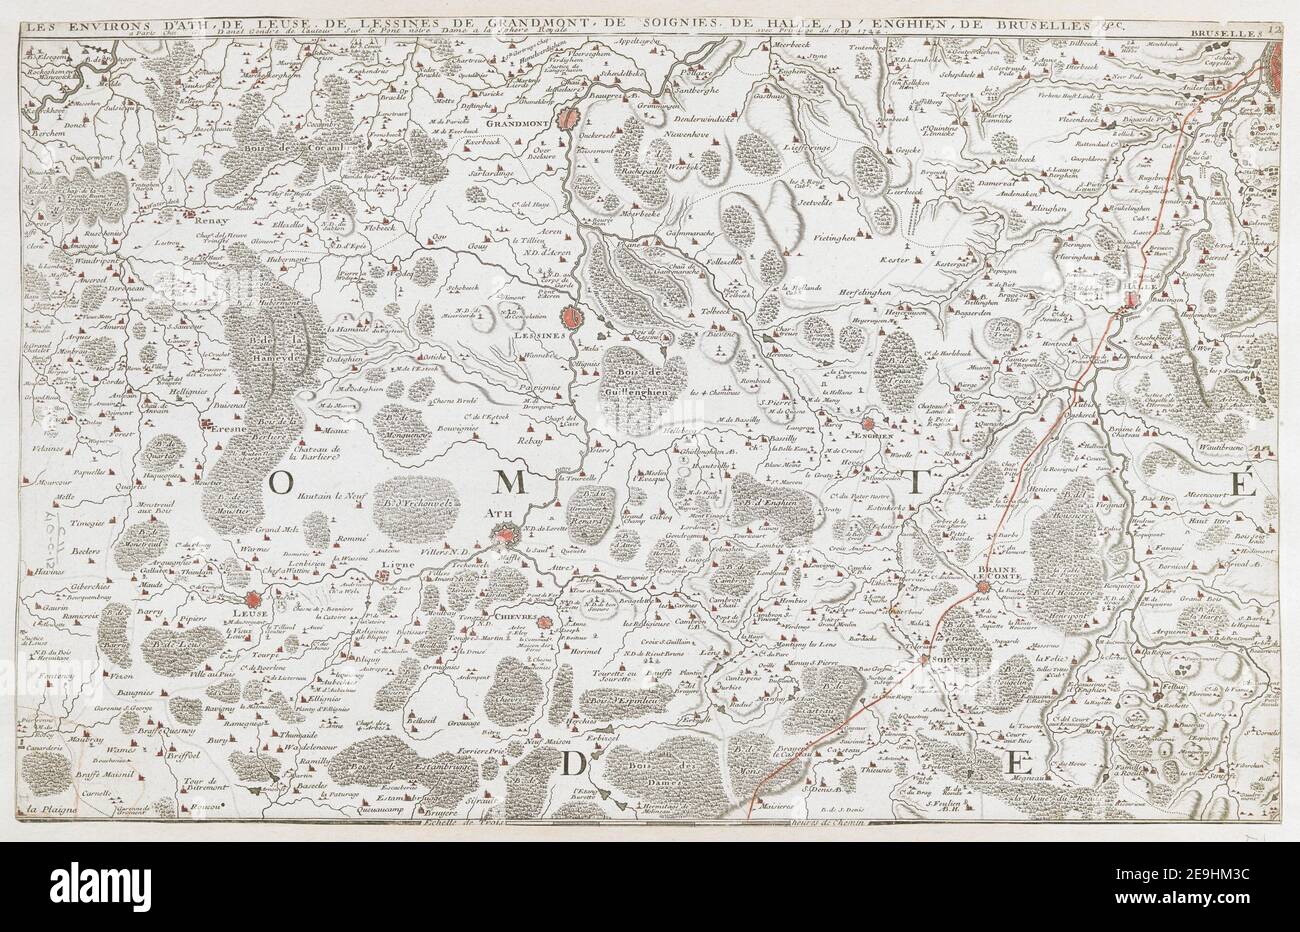 LES ENVIRONS D'ATH, DE LEUSE, DE LESSINES DE GRANDMONT, DE OIGNIES, DE HALLE, D'ENGHIEN, DE BRUSELLES &c.  Author  Fer, Nicolas de 102.40.c.12. Place of publication: [Paris] Publisher: [G. Danet or J. F. BeÃÅnard] Date of publication: [1743.]  Item type: 1 map Medium: hand coloured Dimensions: 31 x 50 cm  Former owner: George III, King of Great Britain, 1738-1820 Stock Photo